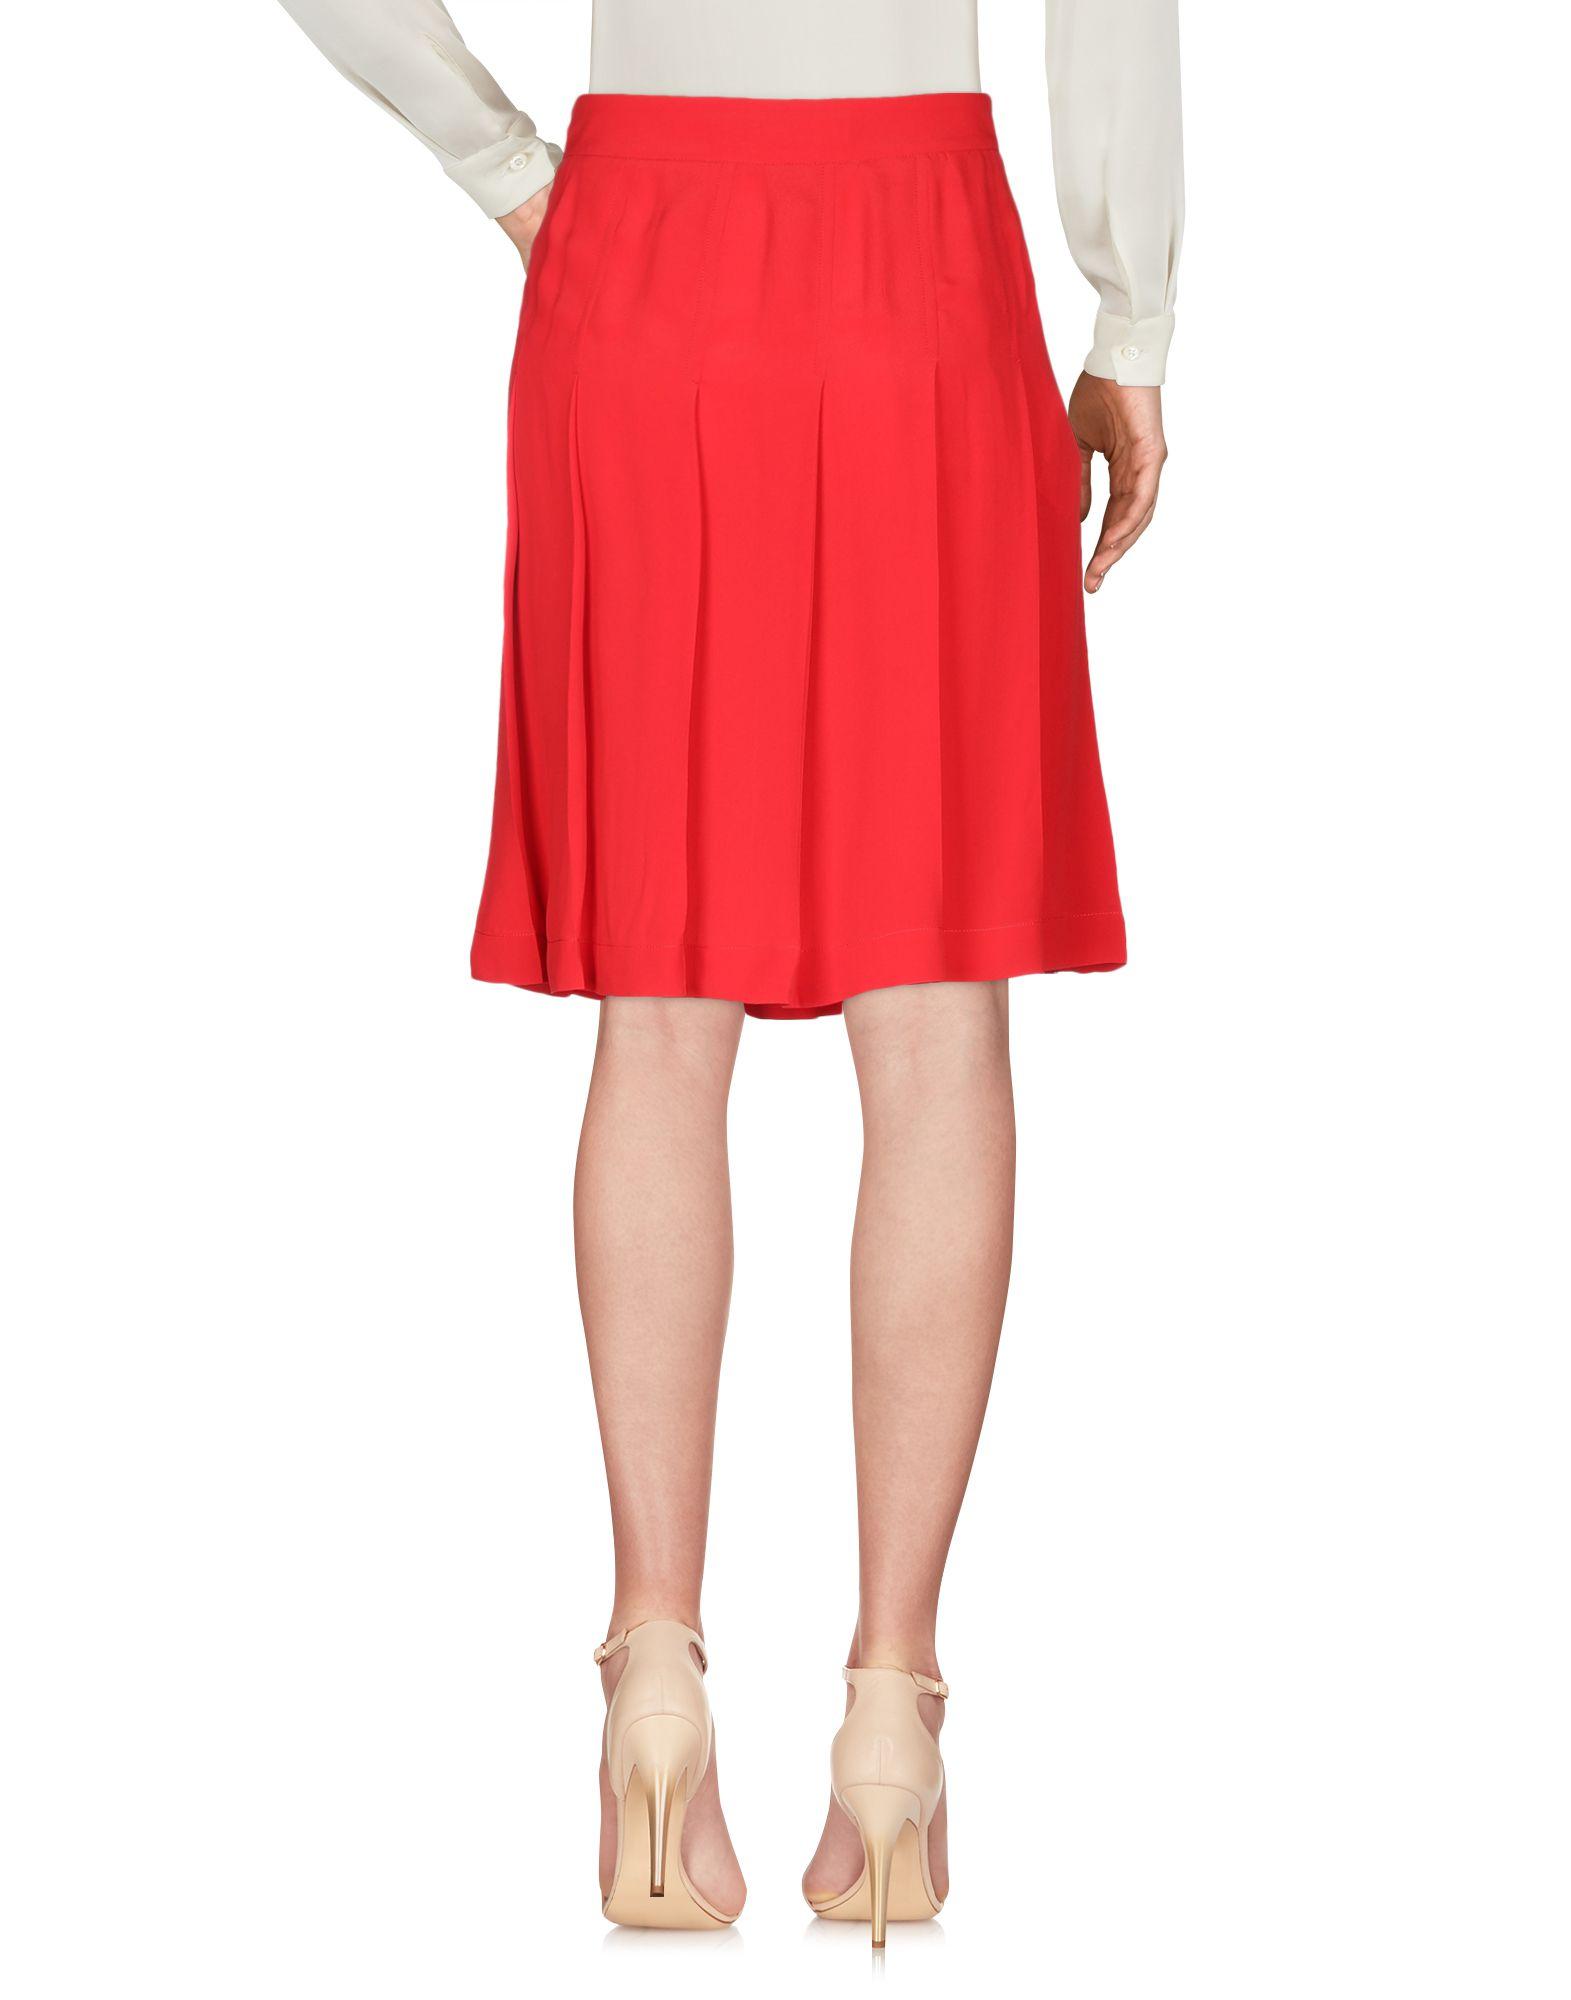 Marni Knee Length Skirt in Red - Lyst